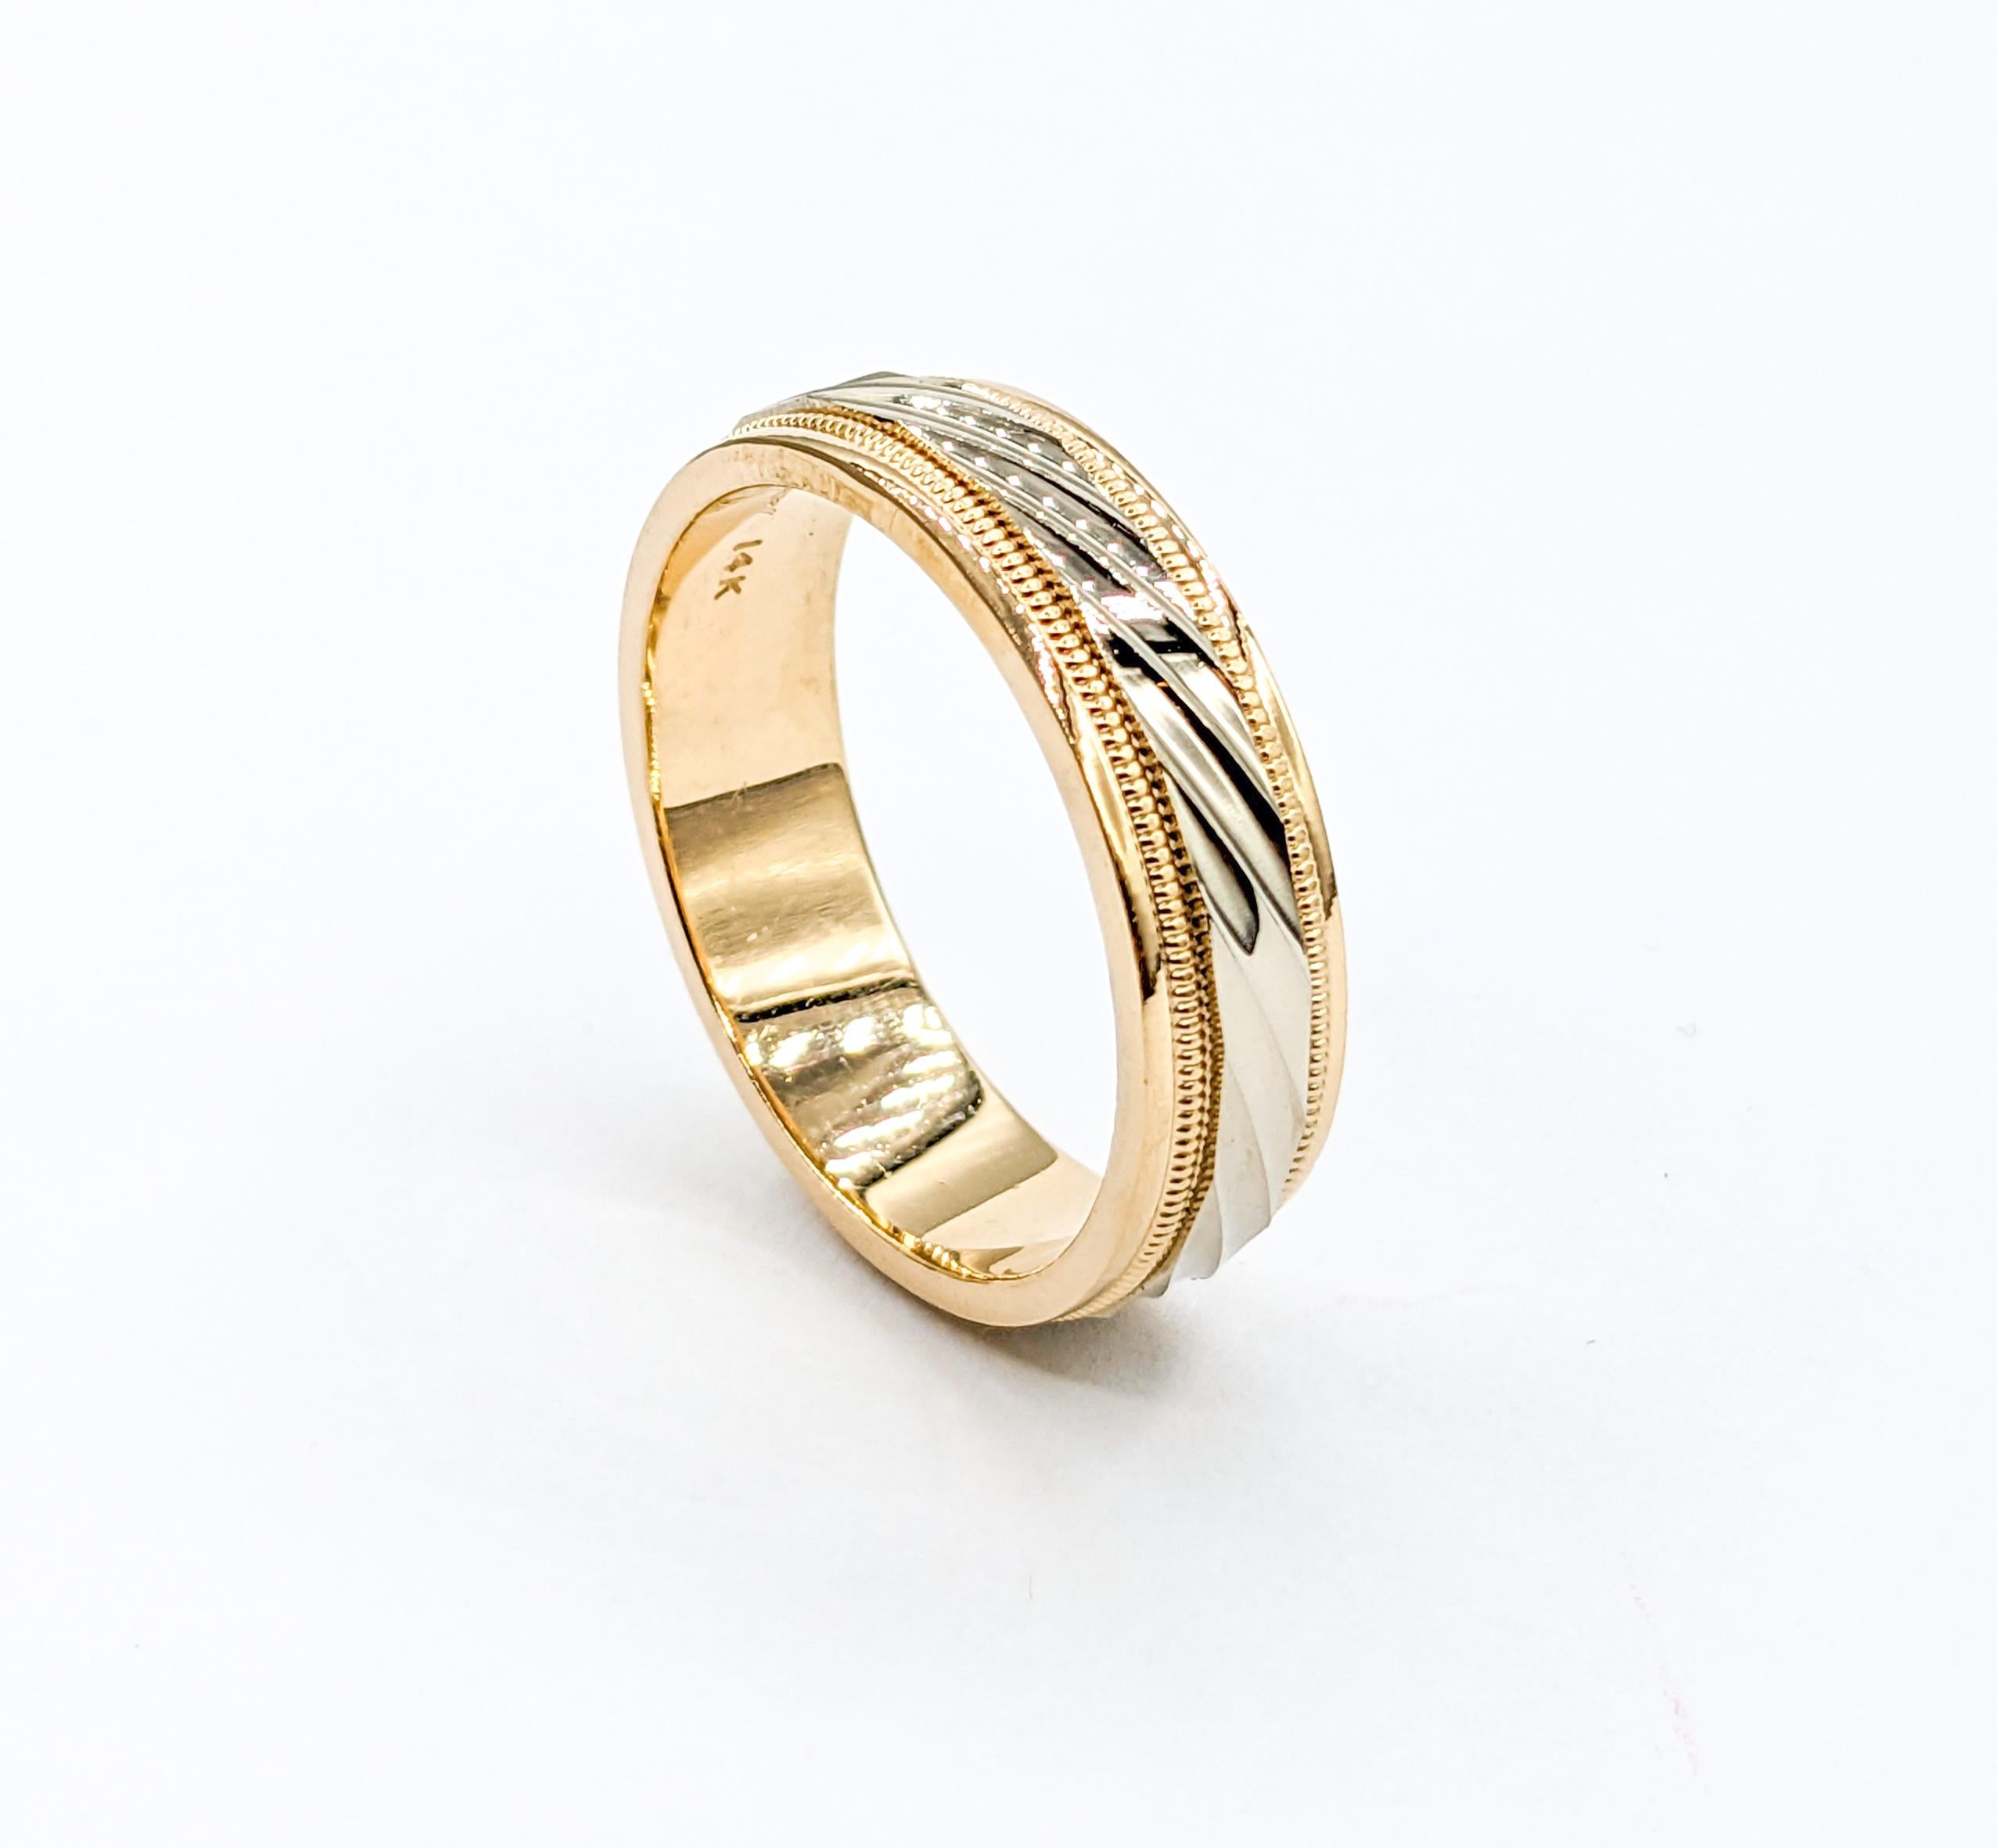 Milgrain Stripped Herrenring Gelbgold

Entdecken Sie die Faszination dieses exquisiten Rings, der sorgfältig aus 14 Karat zweifarbigem (Weiß- und Gelbgold) gefertigt ist. Das atemberaubende, 6,9 mm breite Milgrain Stripe Design strahlt zeitlose